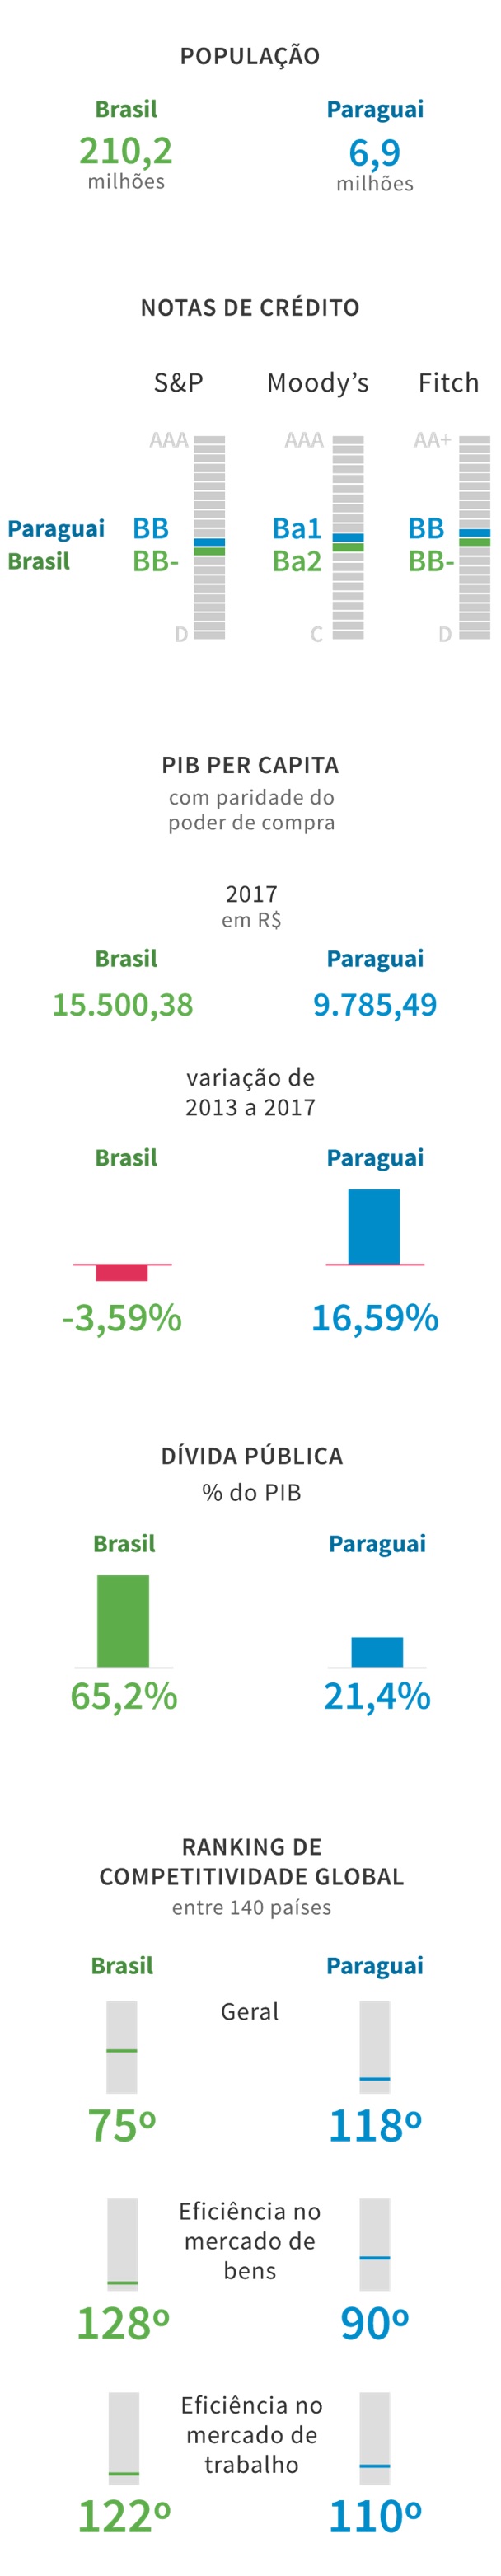 Como-o-brasil-acabou-com-menos-credito-no-mercado-do-que-o-paraguai-televendas-cobranca-interna-1